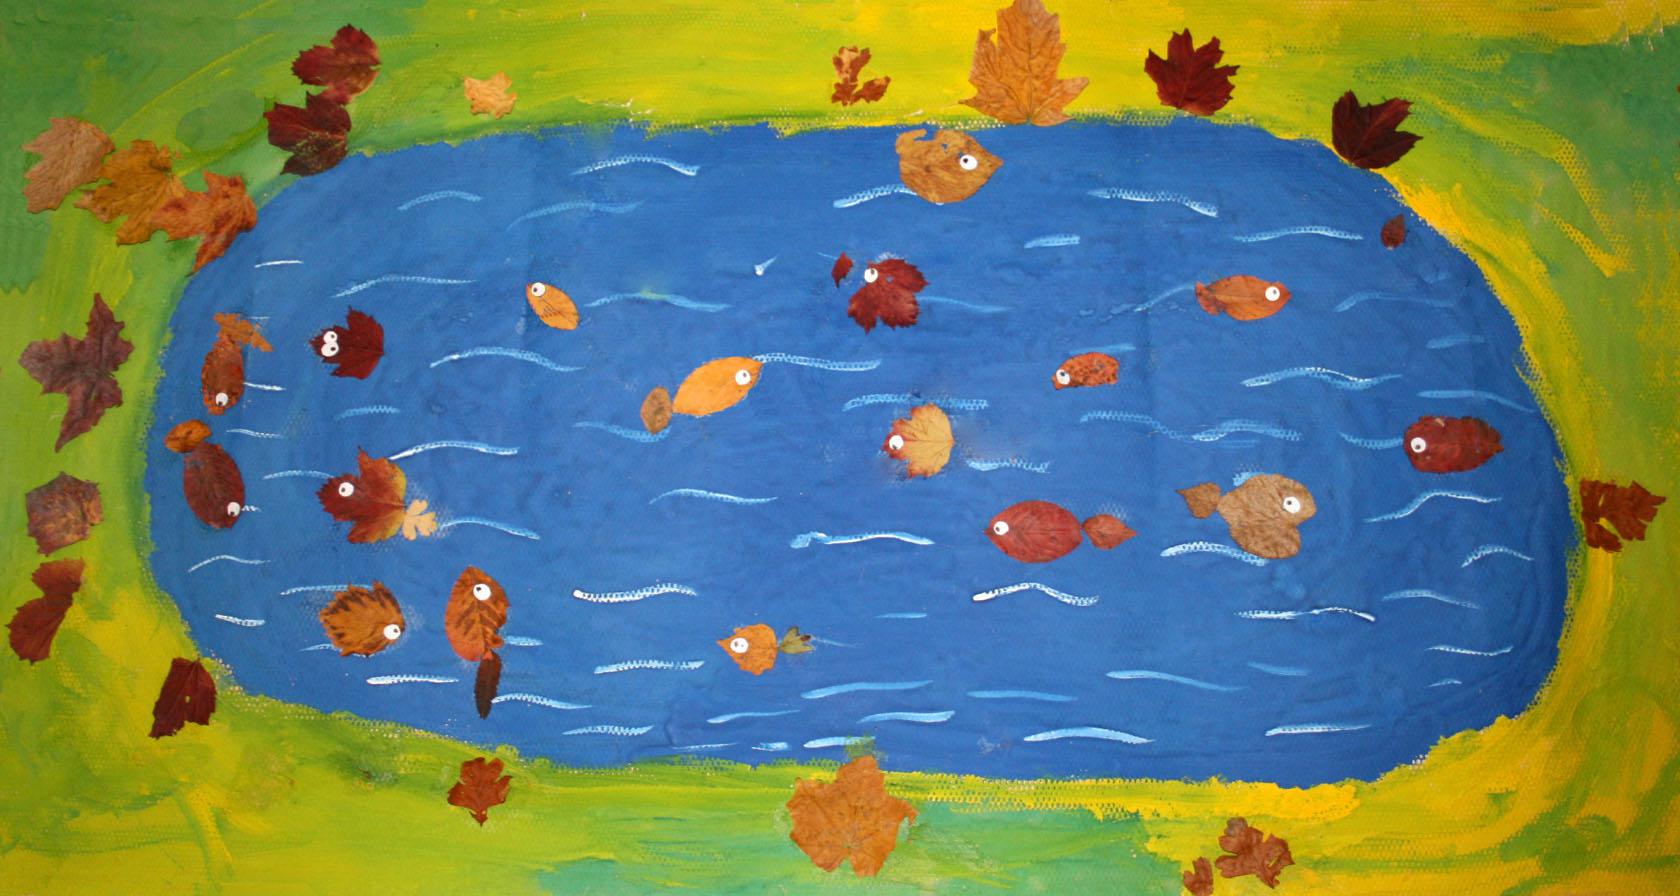 Поделки своими руками Осень. Аппликация из осенних листьев рыбки в озере Поделки на праздники